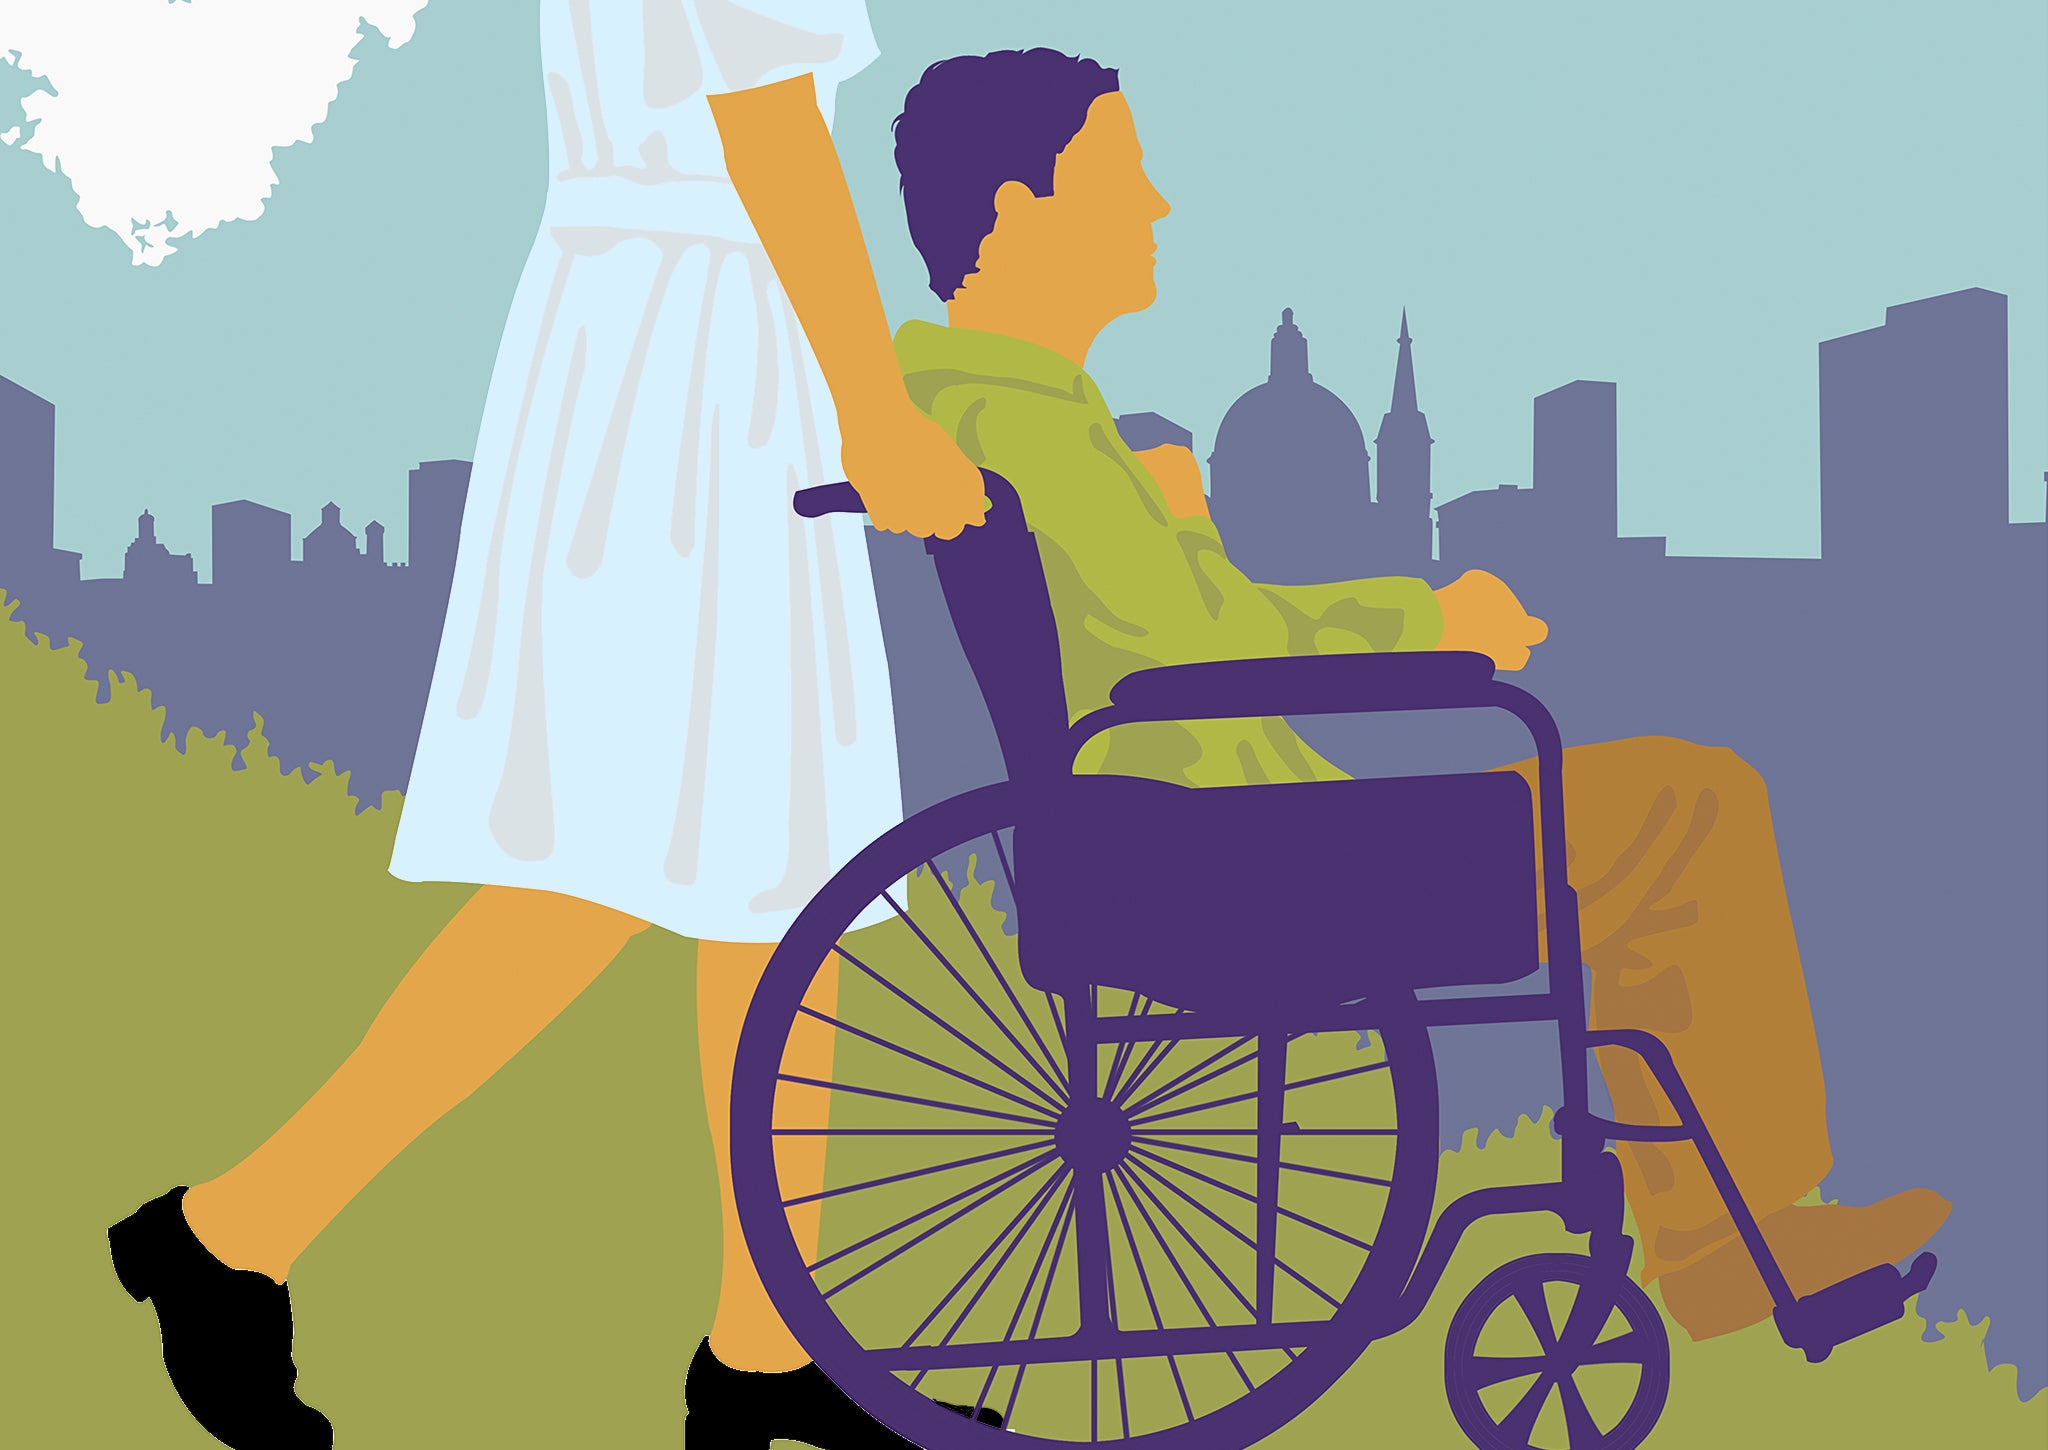 A woman pushes a man in a wheelchair through a city park